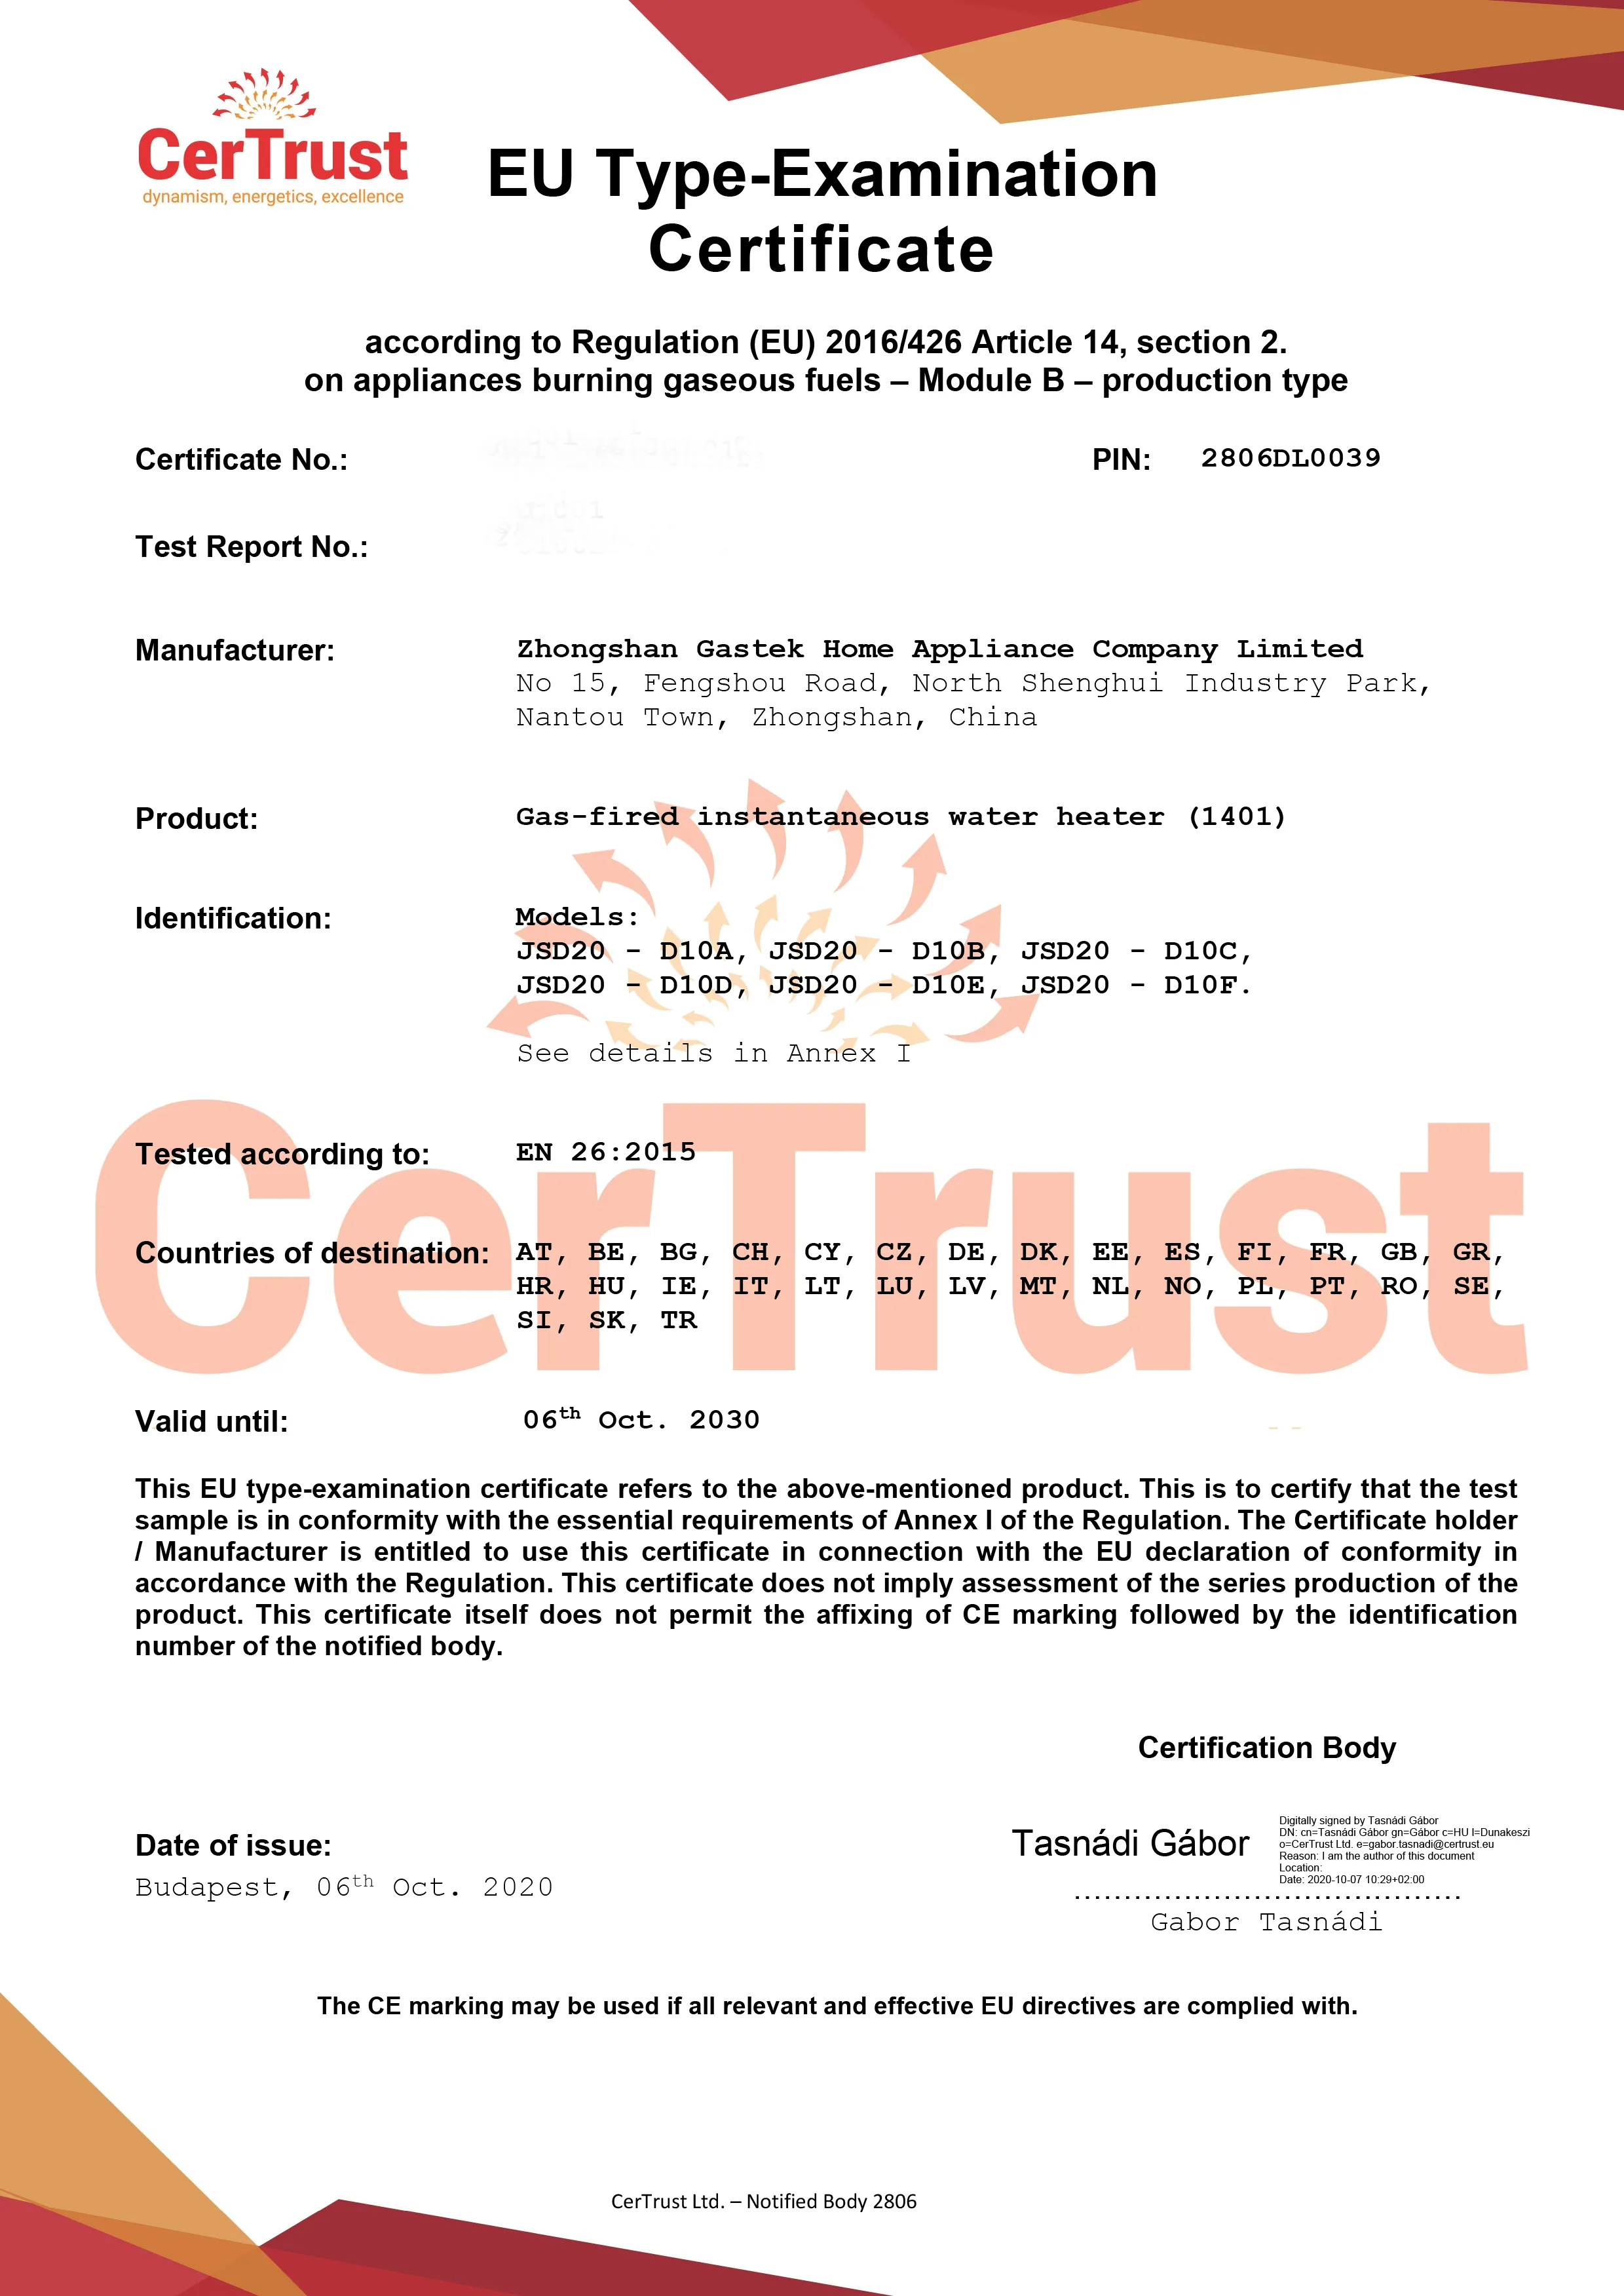 Gastek obtuvo el certificado CE de calentador de agua a gas en este mes de octubre